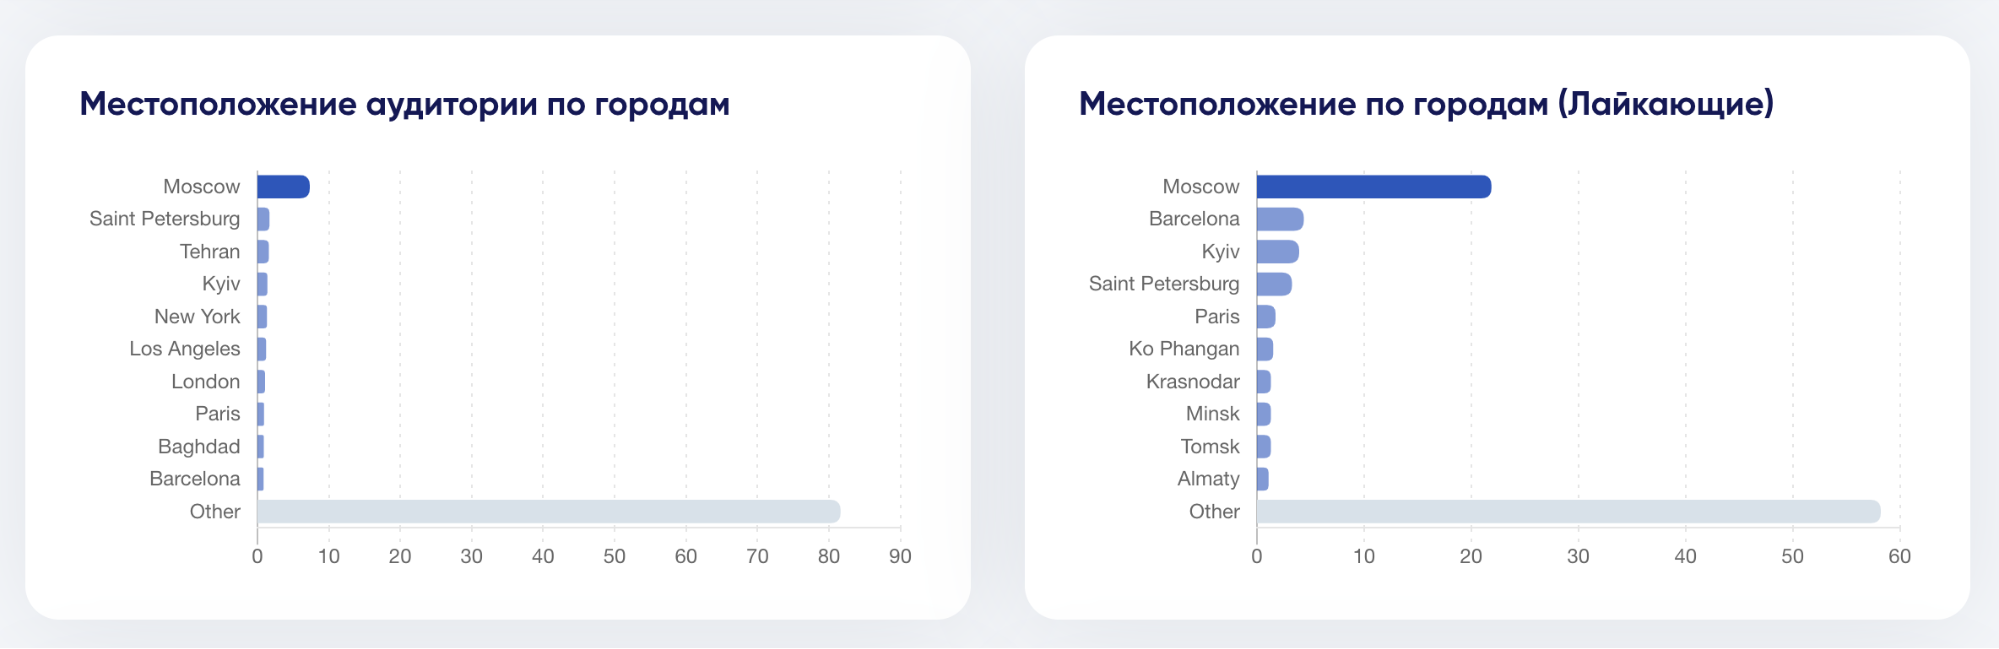 Как проверить плохих и хороших блогеров перед рекламой - trendHERO: местоположение аудитории по городам